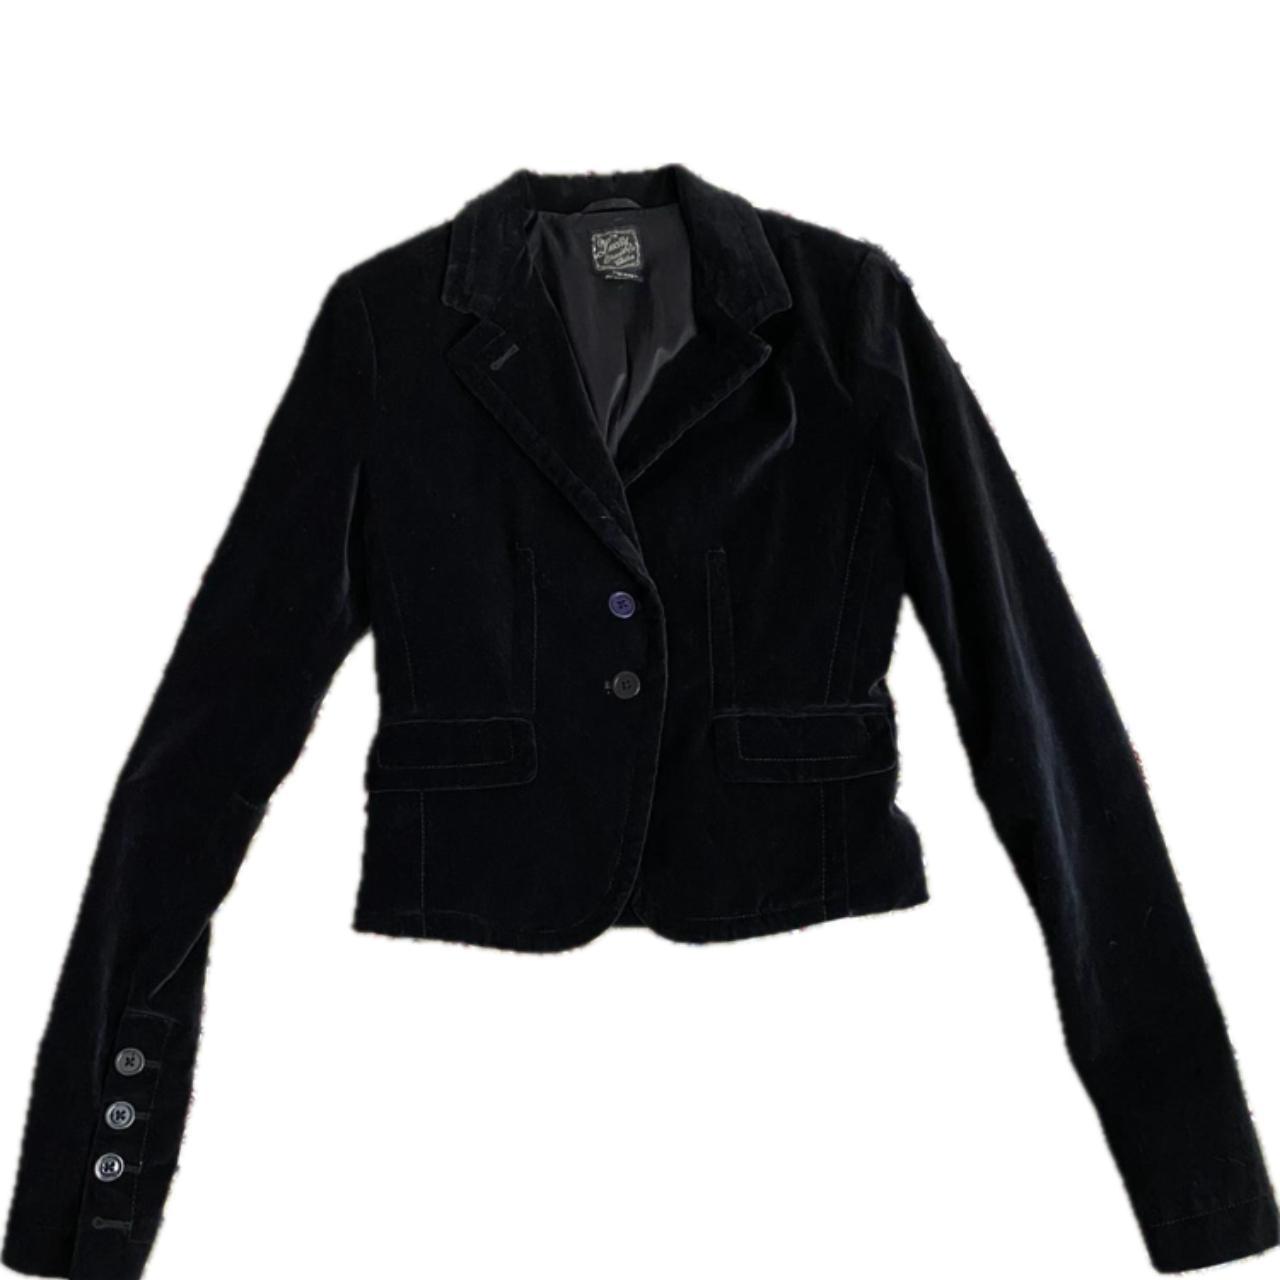 Lucky Brand black velvet suit jacket. Cotton shell - Depop